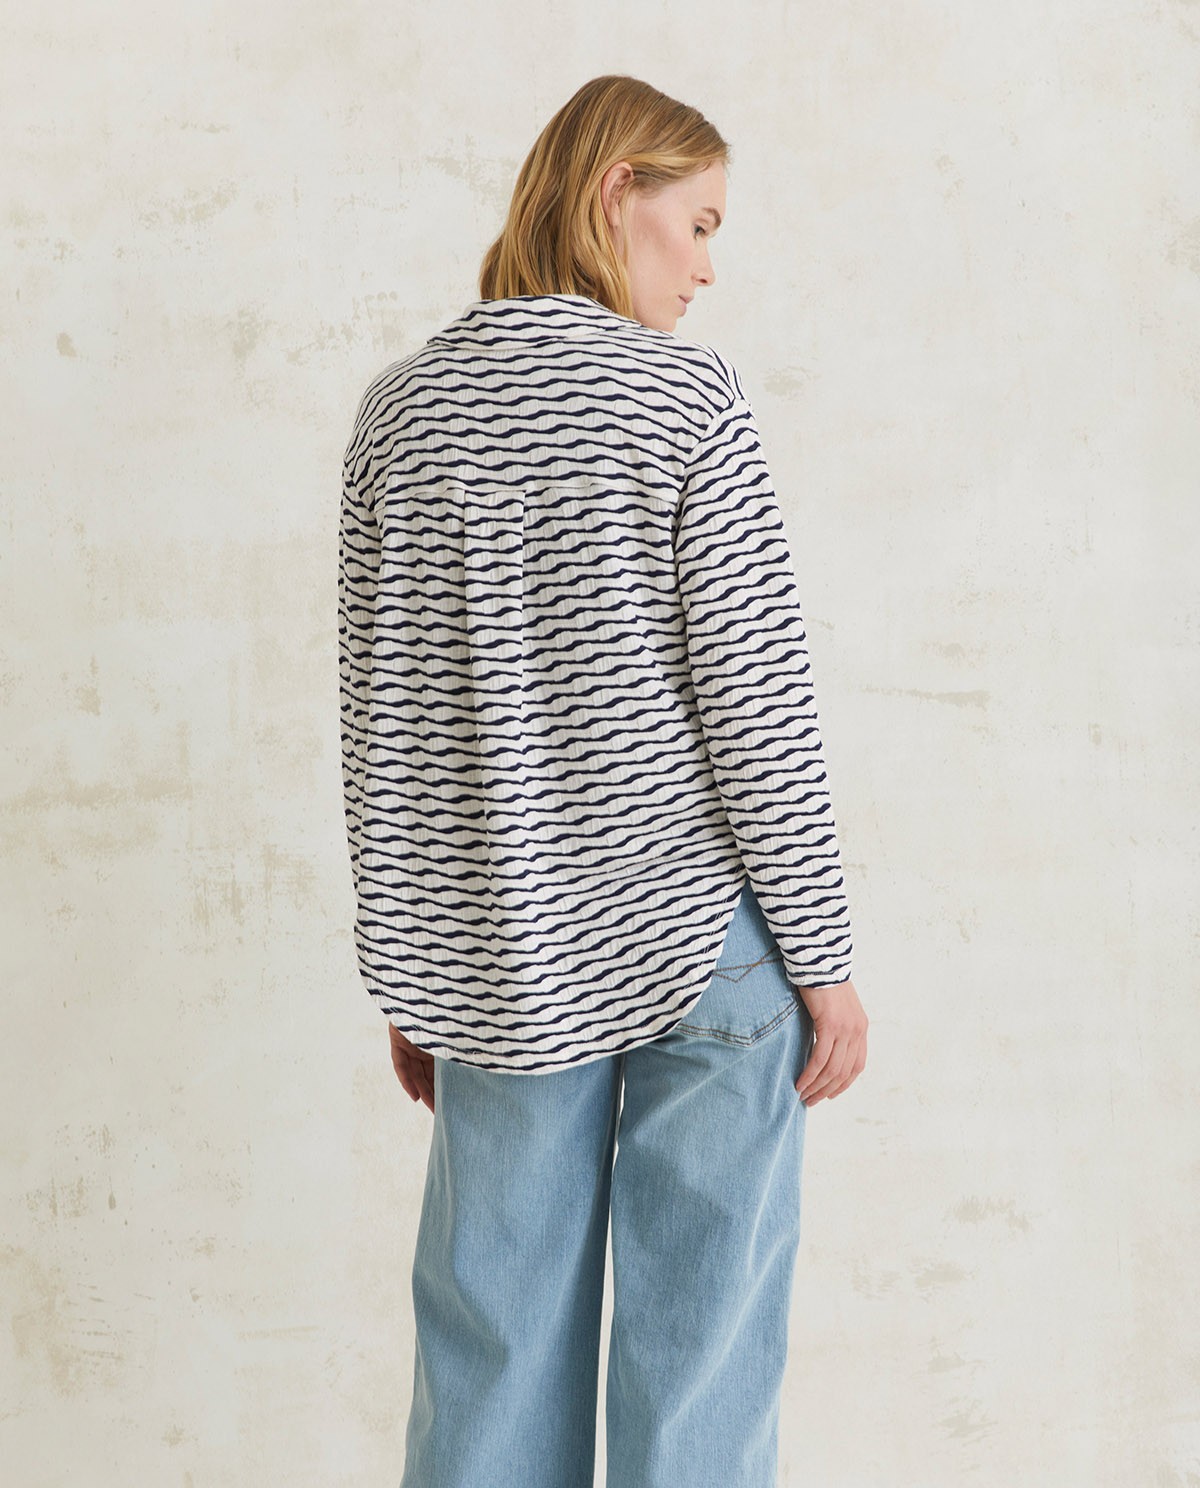 Jacquard knit shirt ecru and navy stripes 2